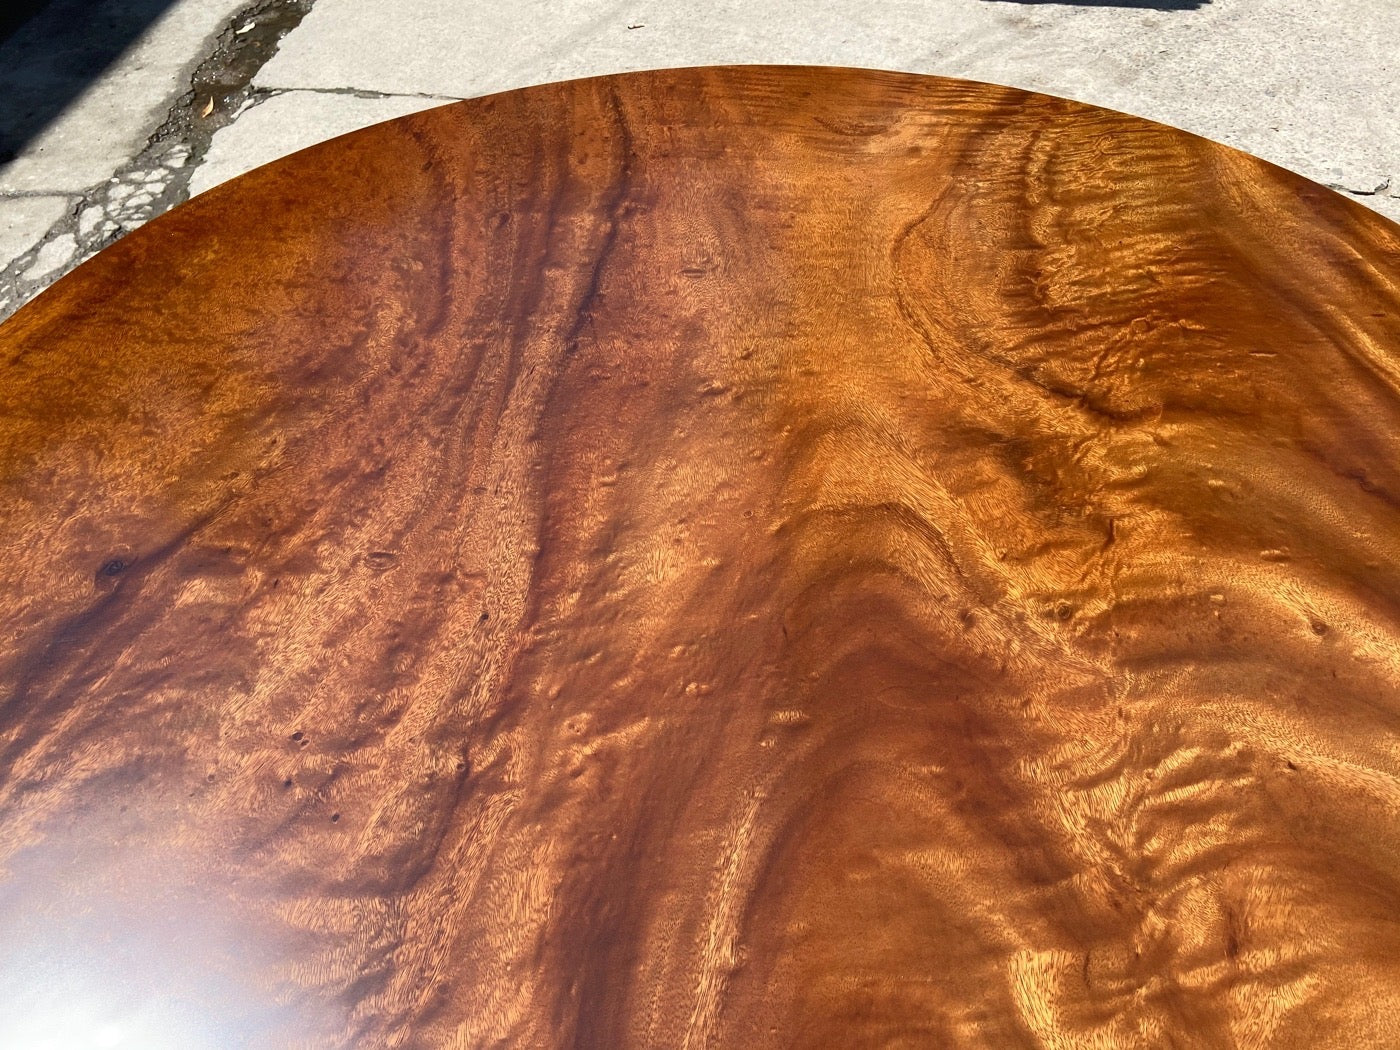 Runder Tisch aus Holz, runde Tischplatte aus unlackiertem Holz